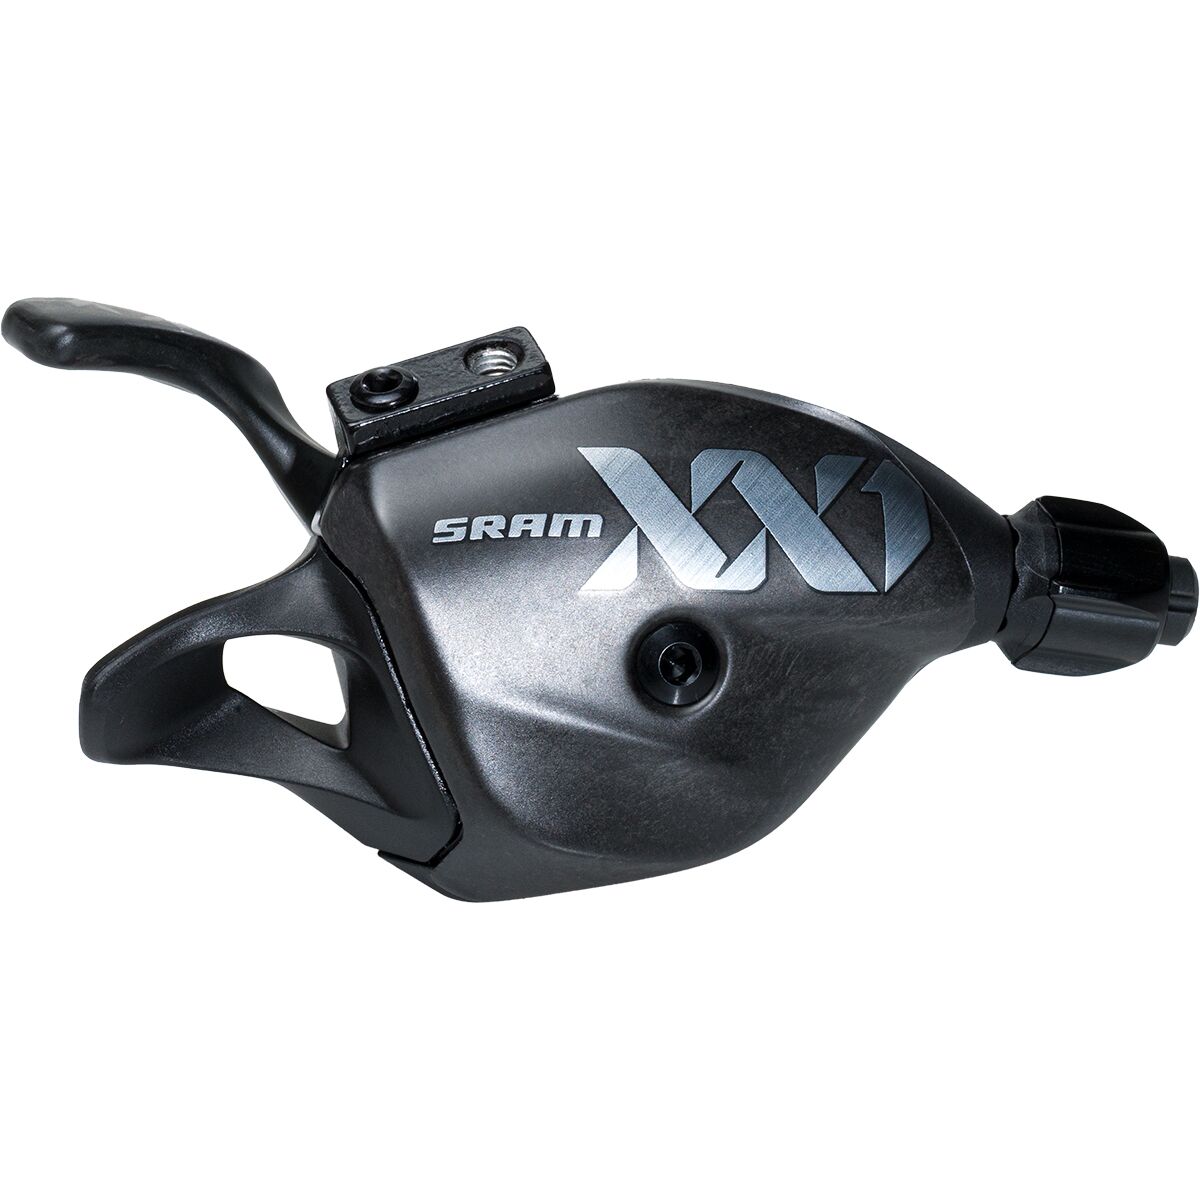 Voordracht kijken Beperkt SRAM XX1 Eagle 12-Speed Trigger Shifter - Bike